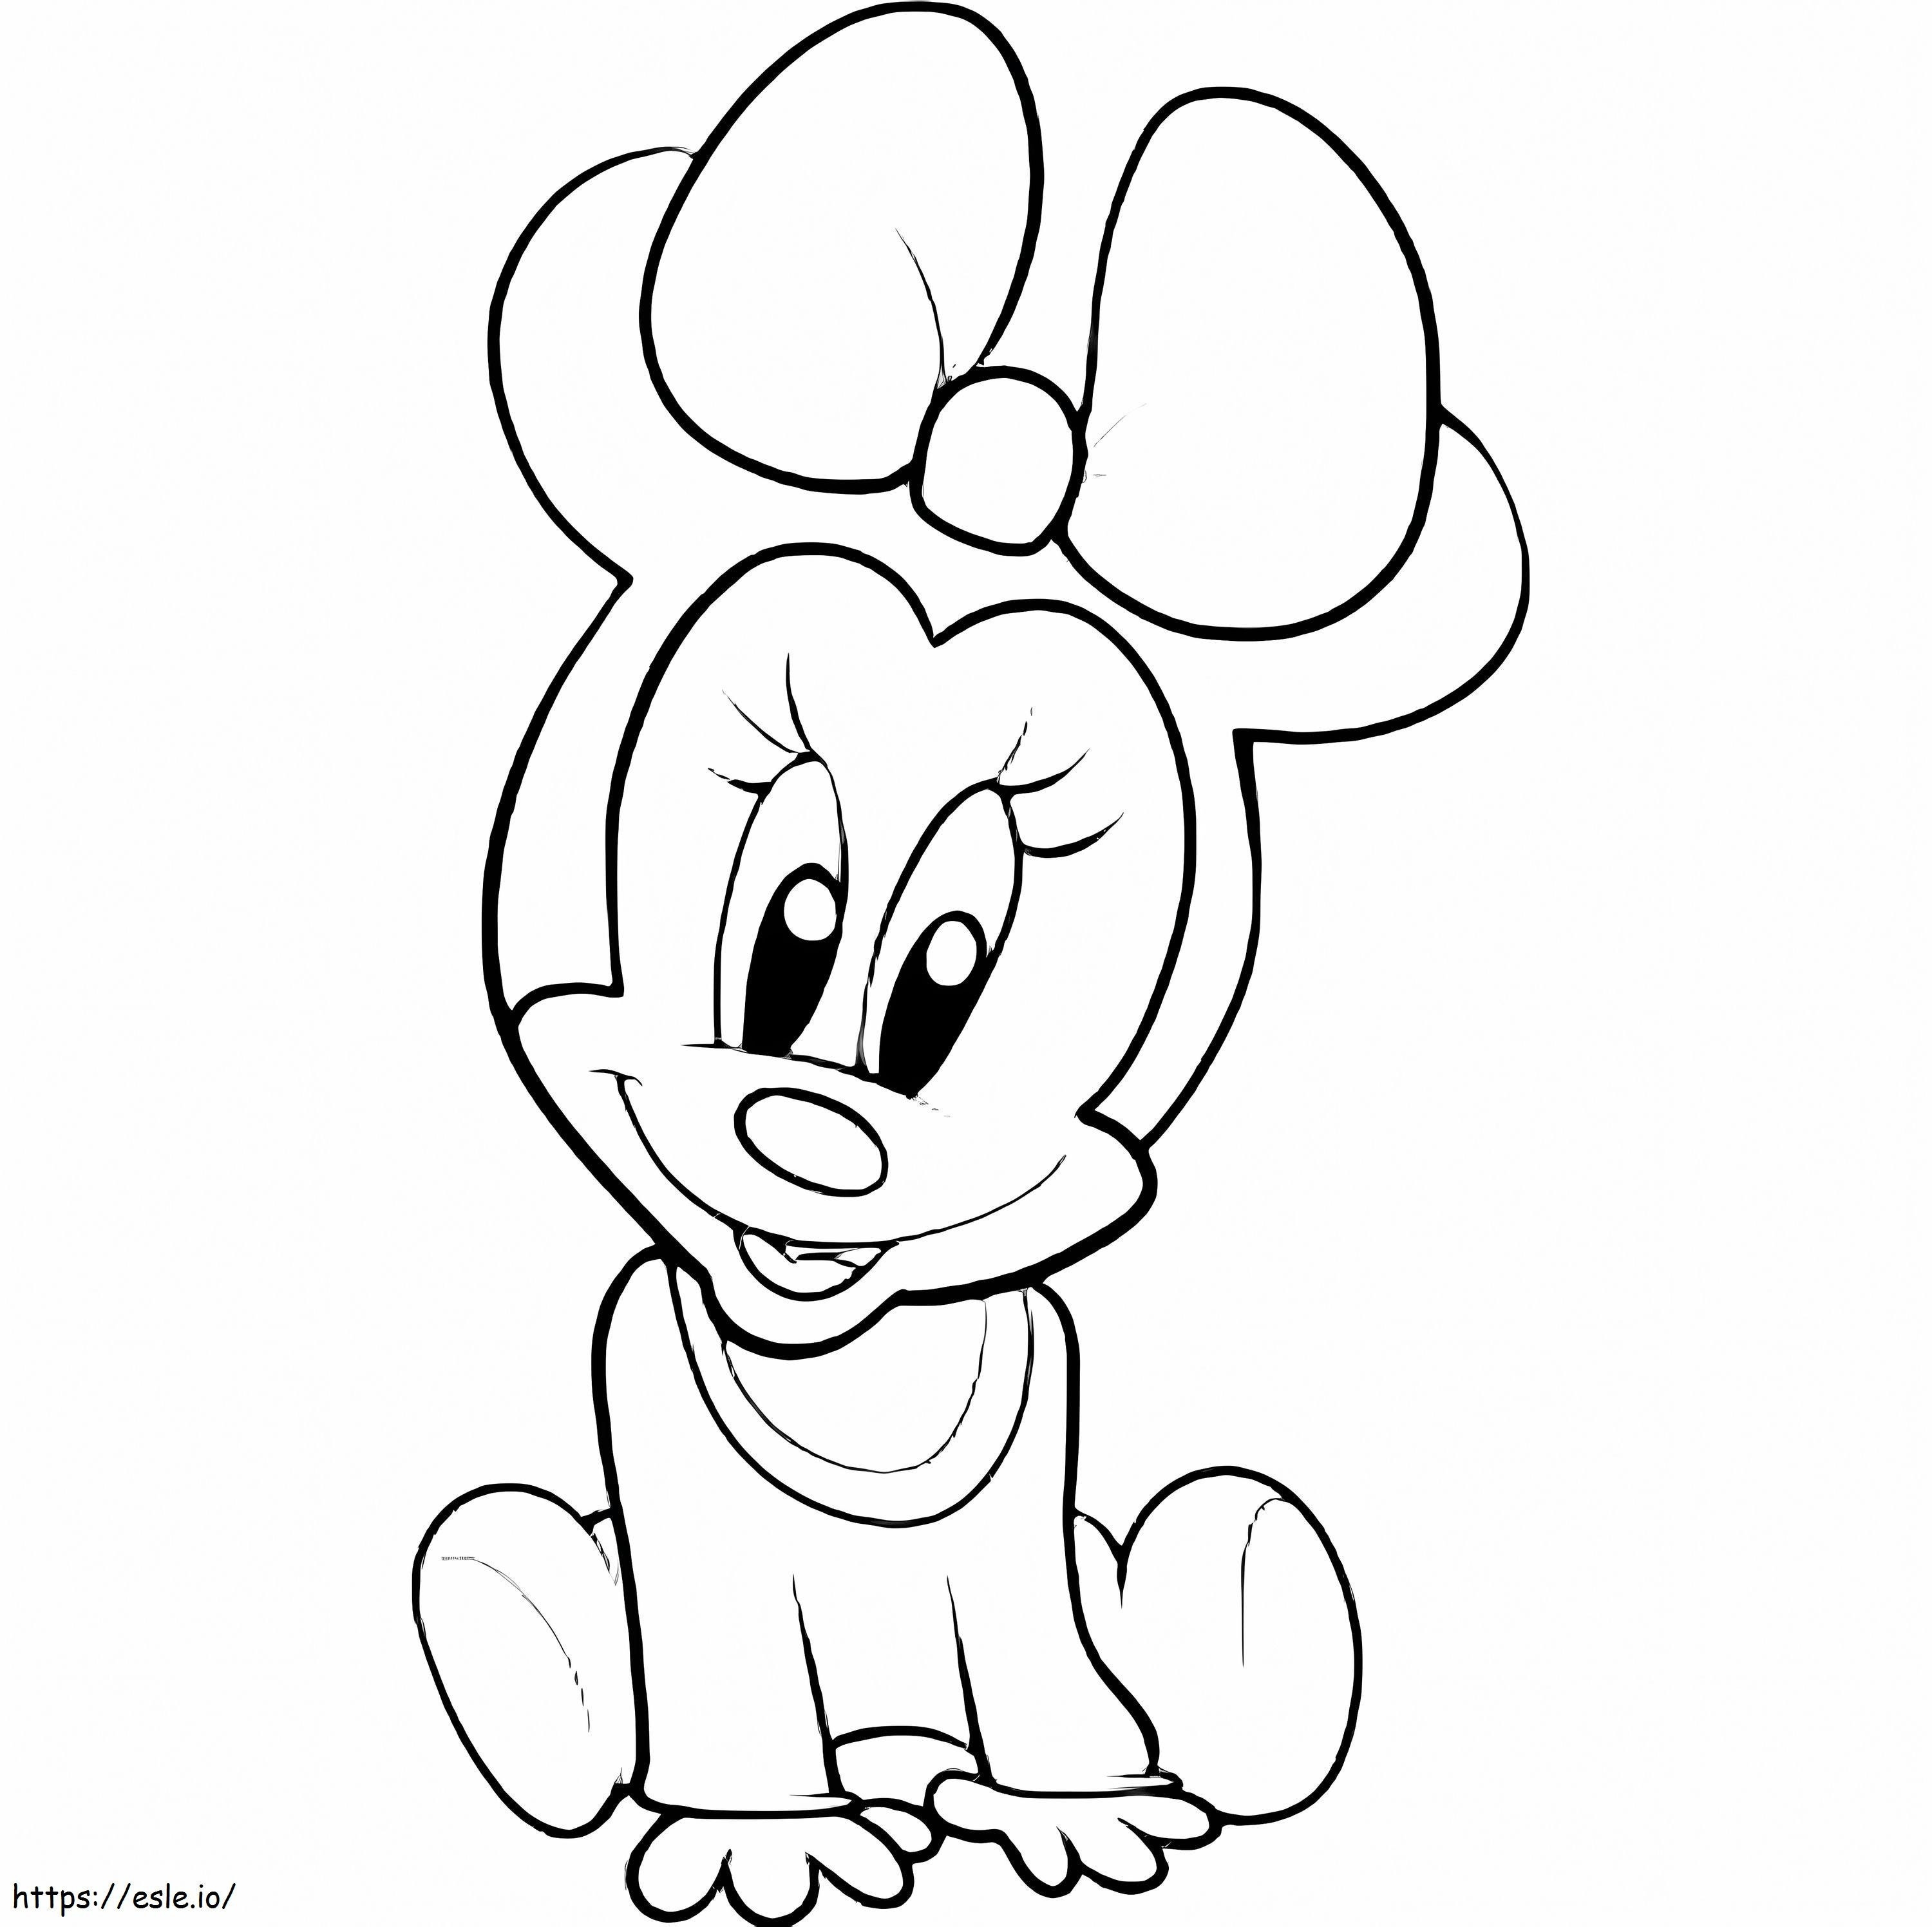 Süße Baby-Minnie-Maus ausmalbilder